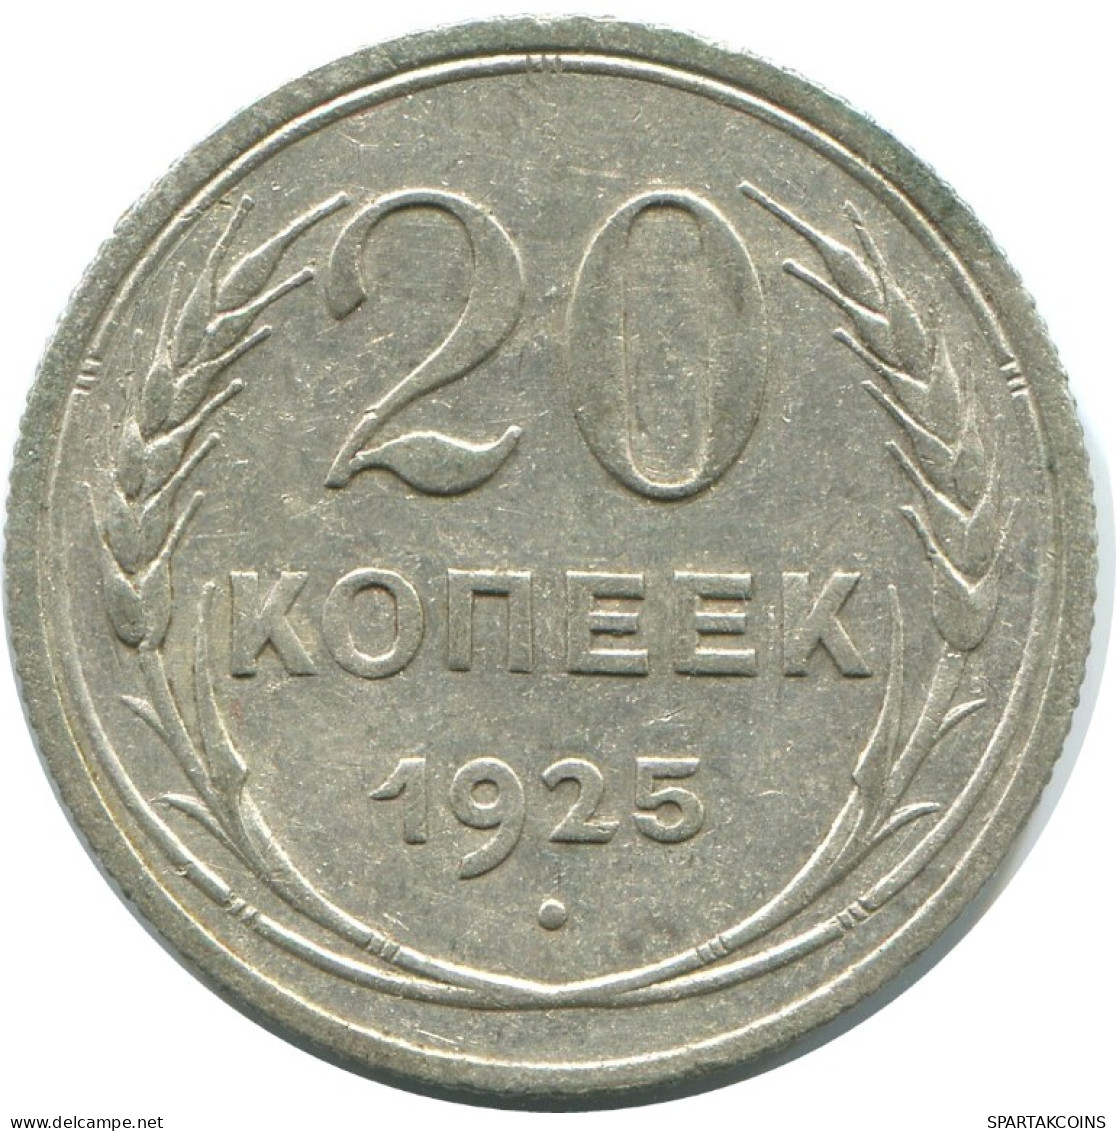 20 KOPEKS 1925 RUSSLAND RUSSIA USSR SILBER Münze HIGH GRADE #AF309.4.D.A - Russia